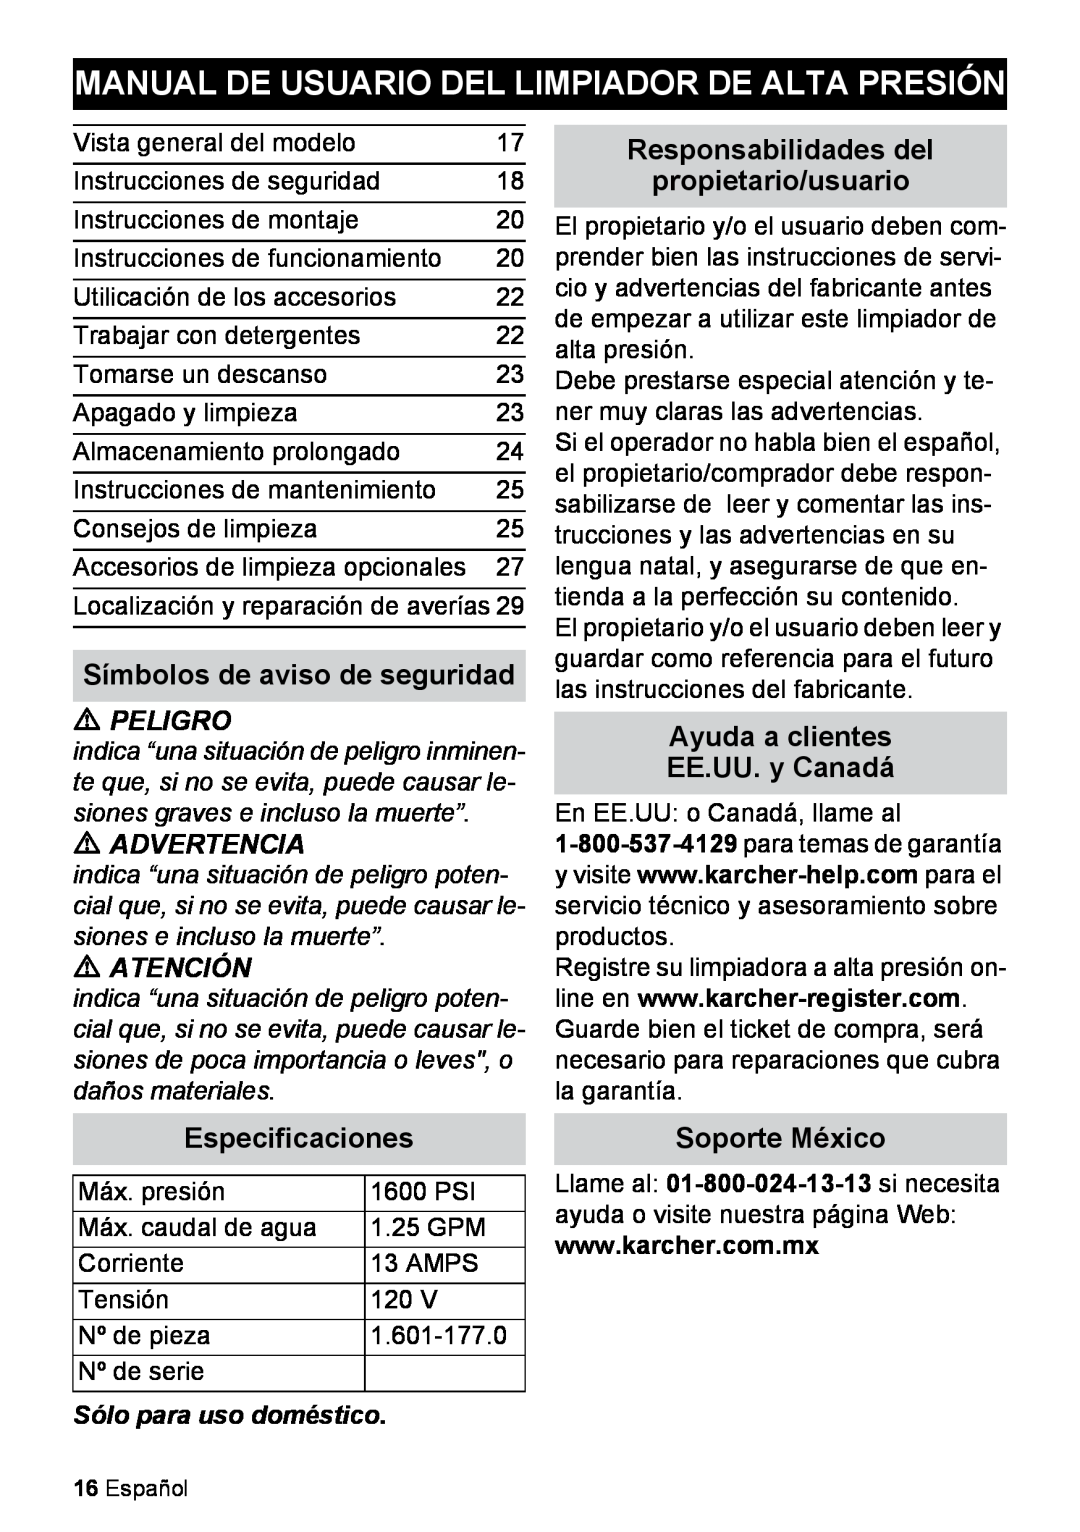 Karcher K 2.27 Manual De Usuario Del Limpiador De Alta Presión, Símbolos de aviso de seguridad, Especificaciones, Peligro 